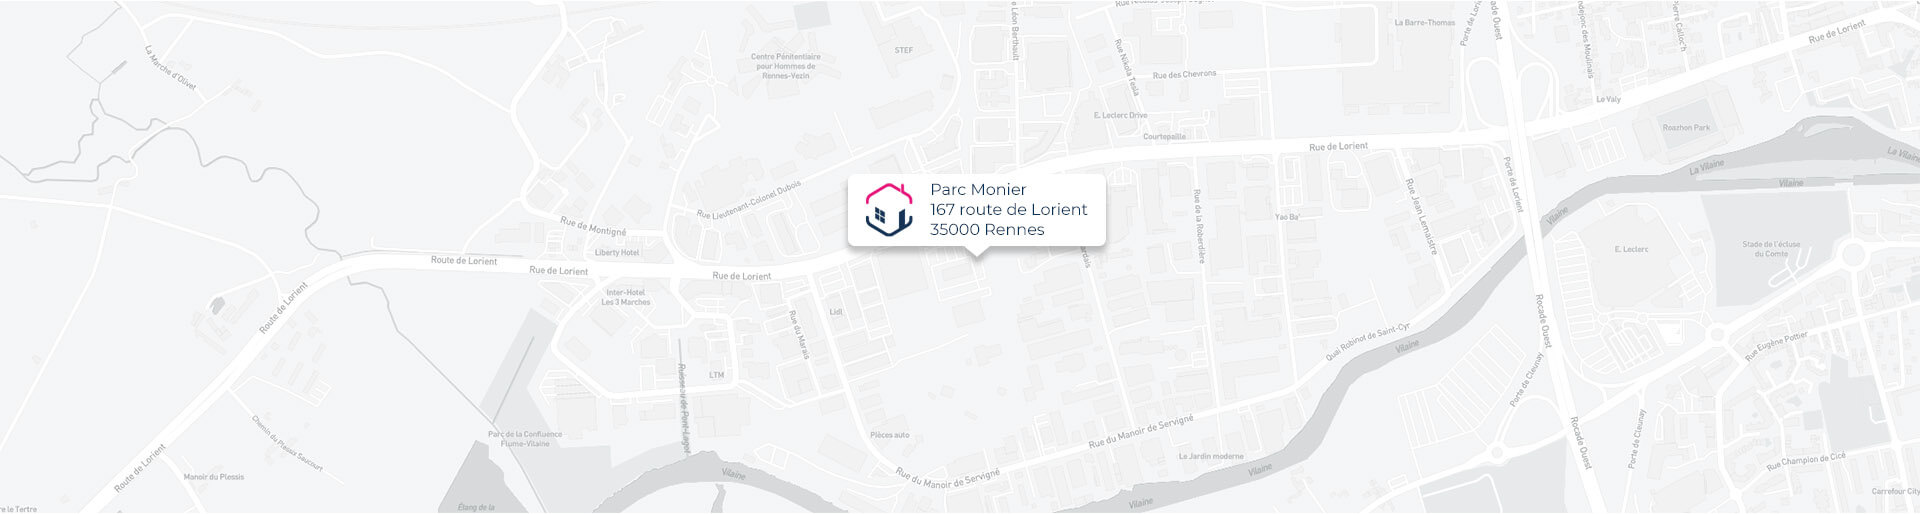 Plan de l'agence de Rennes IMMO9 située Parc Monier 167, route de Lorient 35000 Rennes tel: tel:0230964860